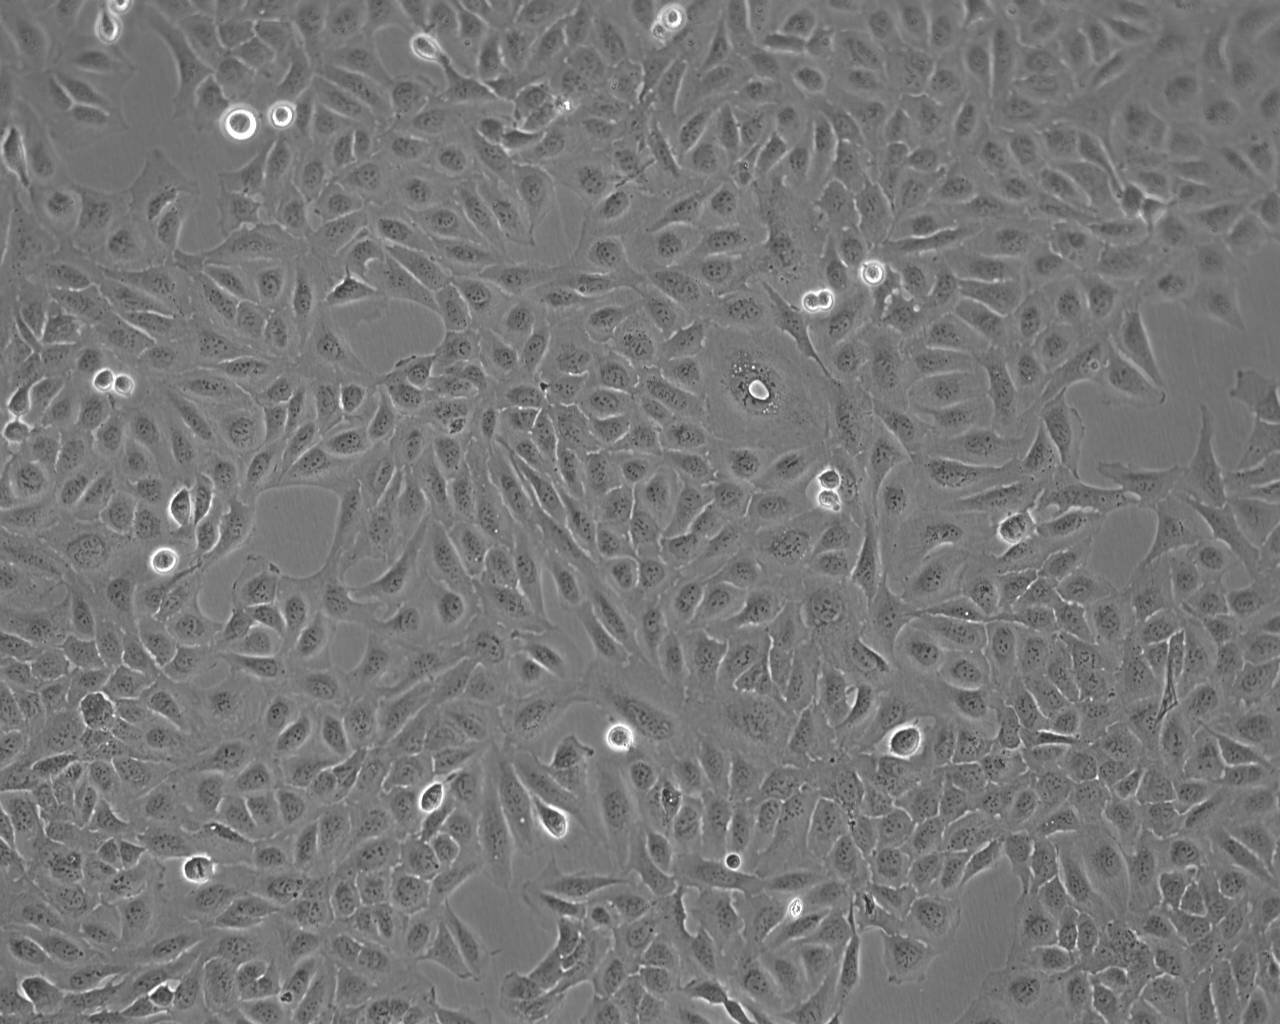 F9 epithelioid cells小鼠畸胎瘤细胞系,F9 epithelioid cells